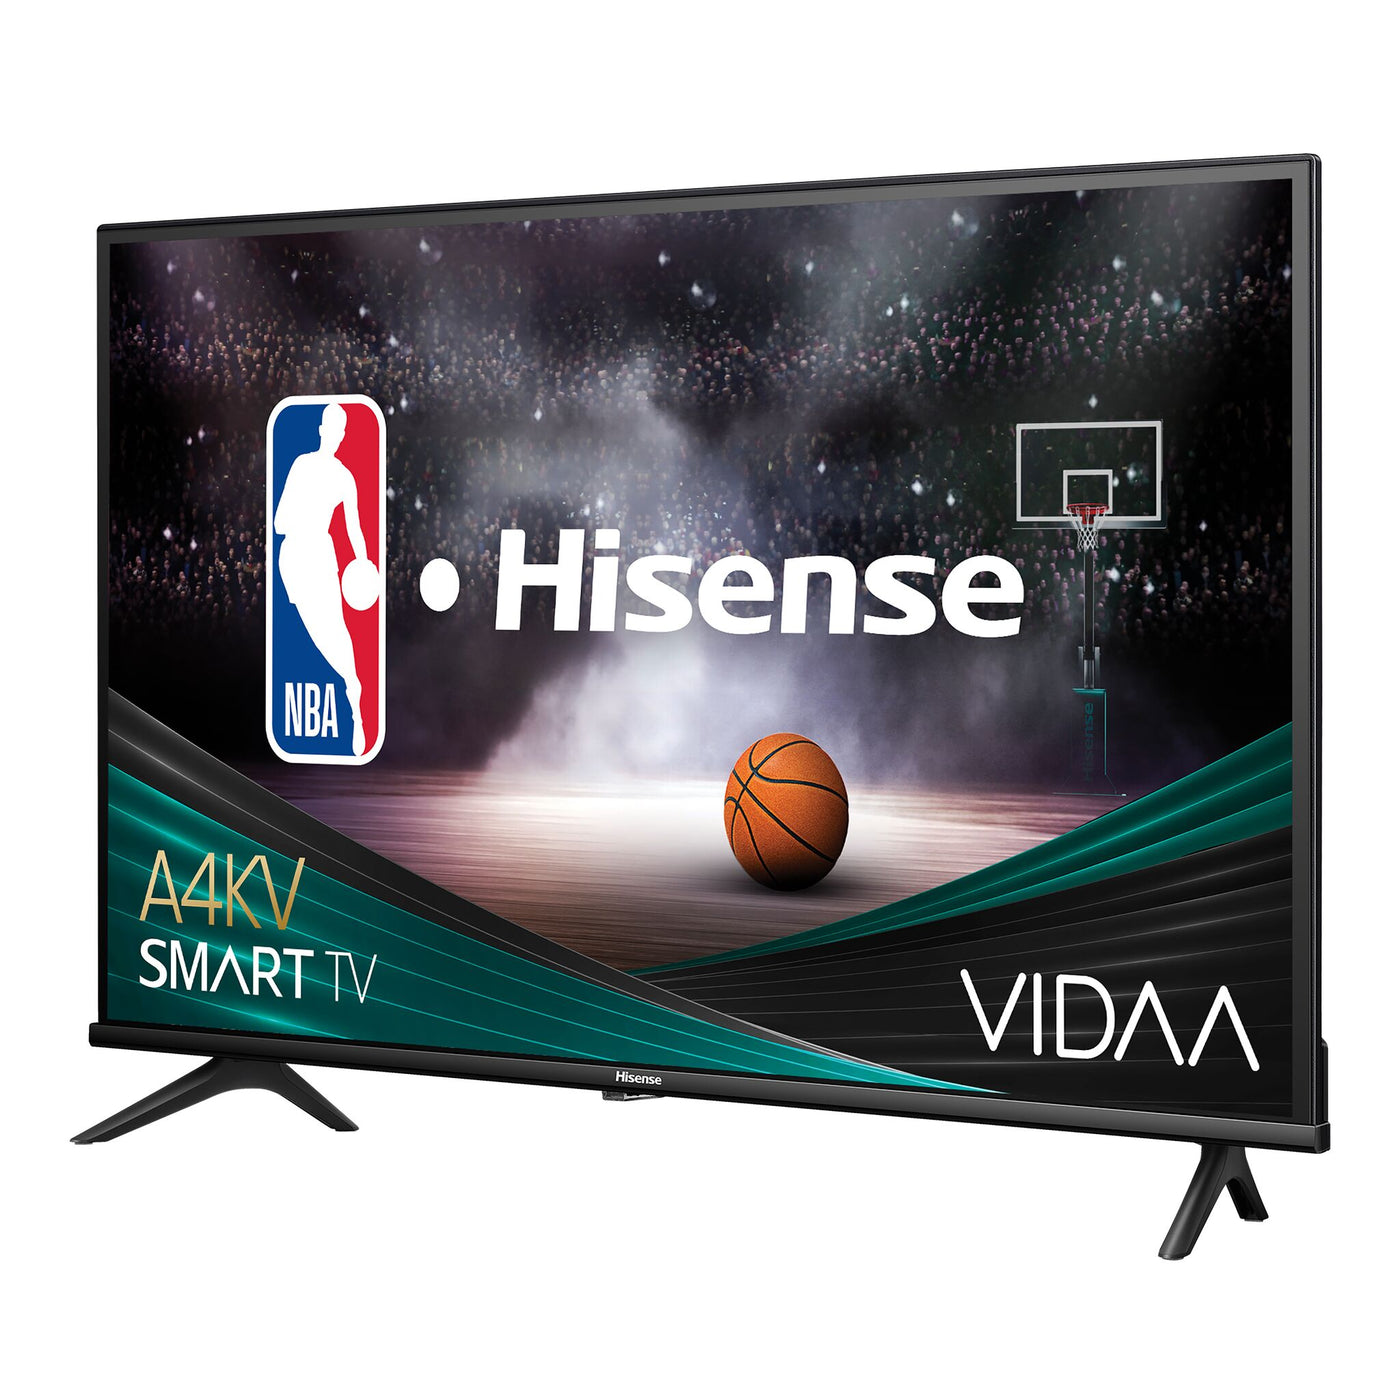 Hisense 32" HD Smart VIDAA LED TV - 32A4KV